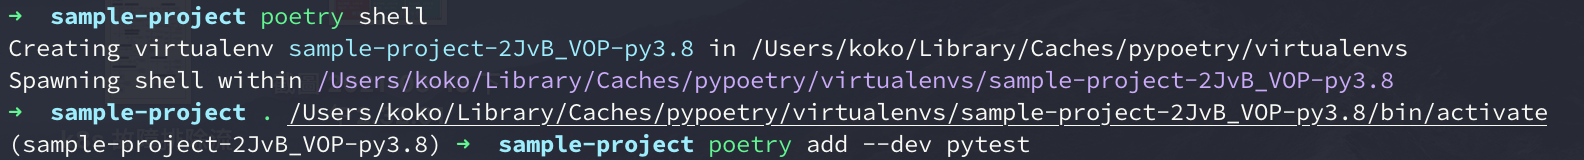 poetry-shell-default-random-virtualenv-name